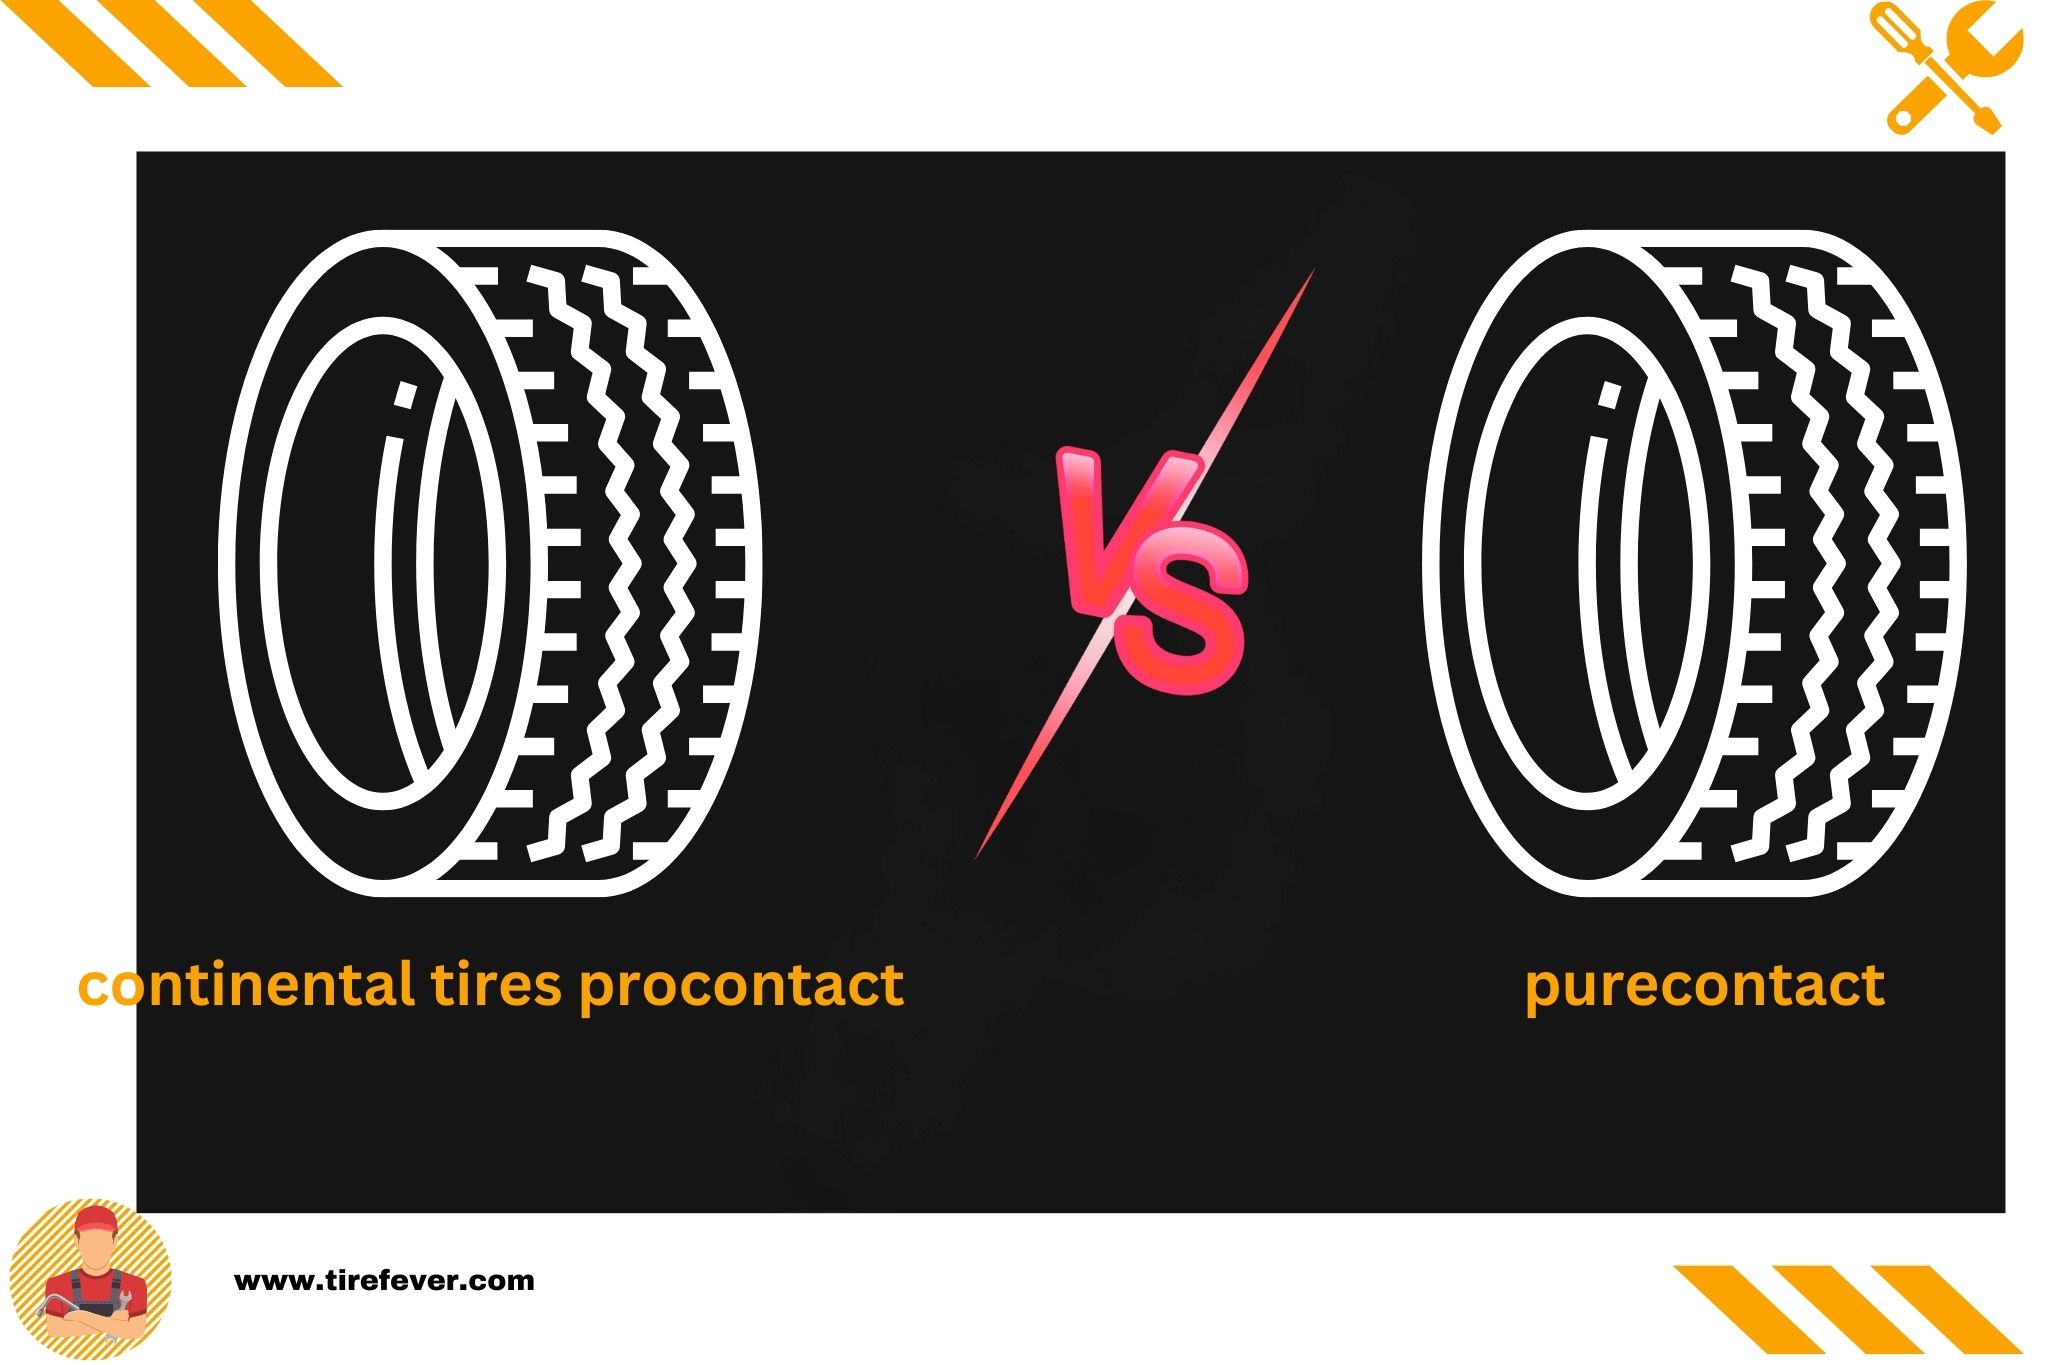 continental tires procontact vs purecontact